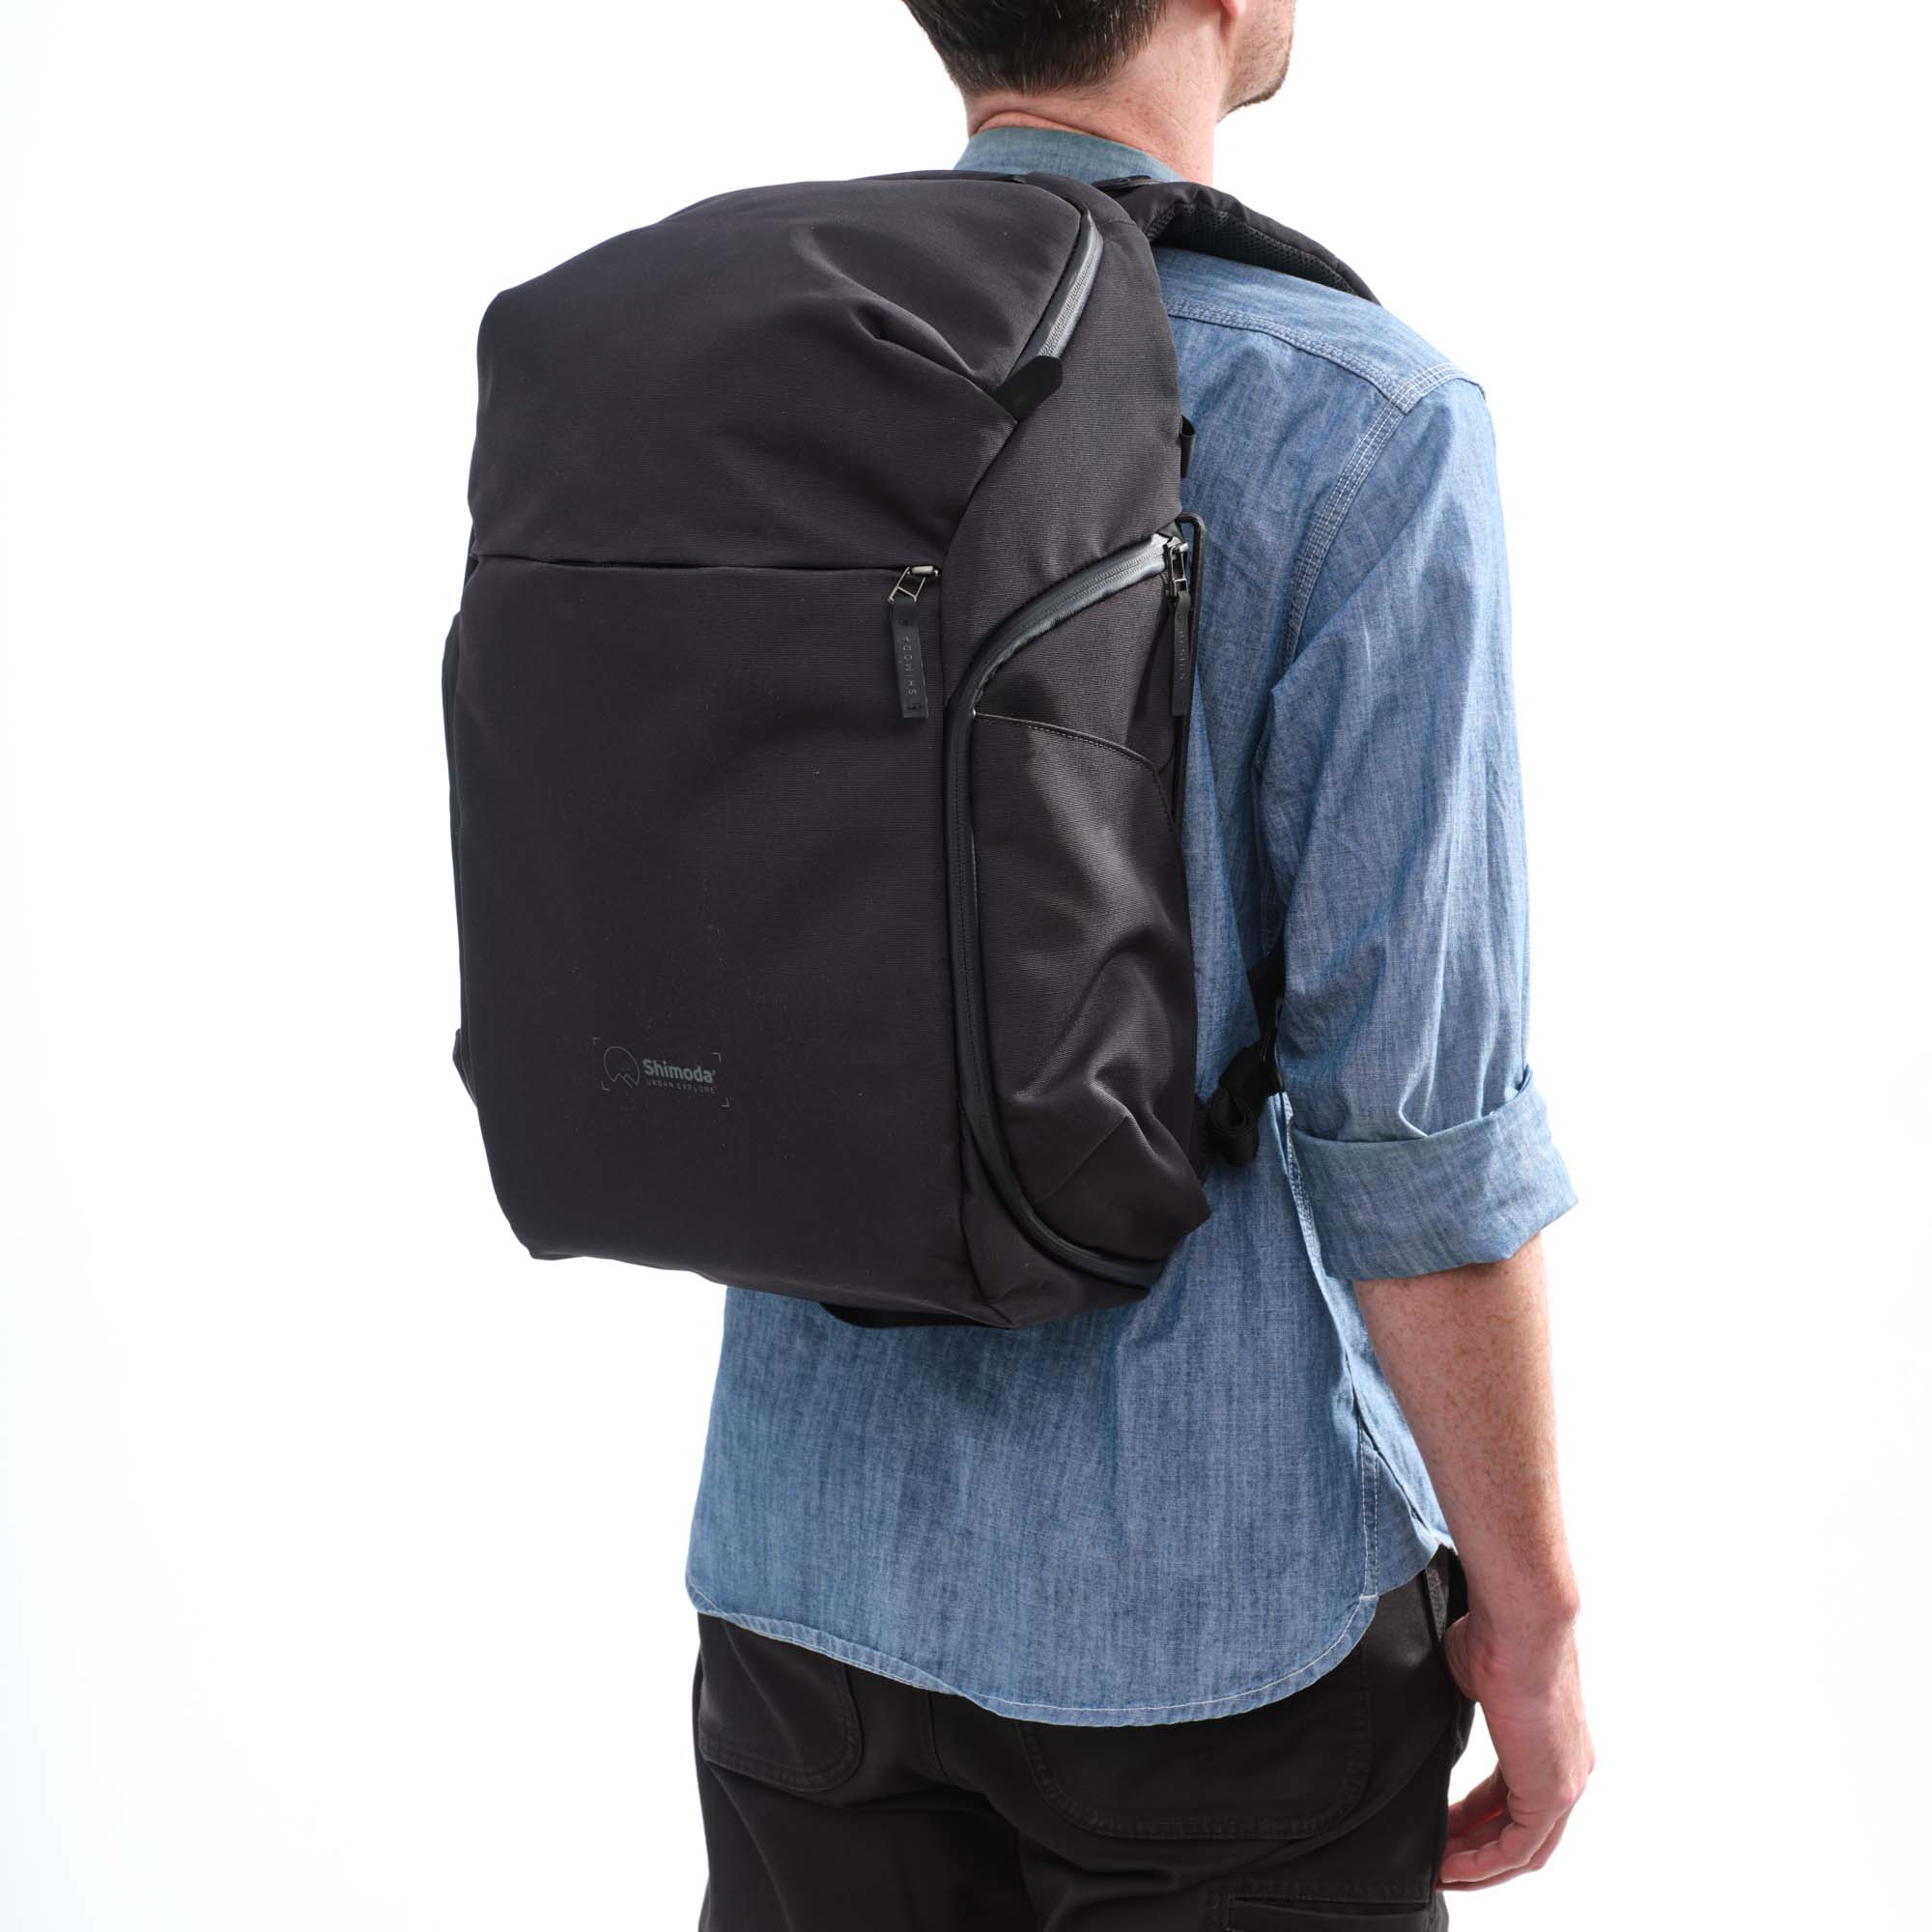 Shimoda Designs Explore 25 Rucksack in Anthrazit, Lifestyle Foto des Rucksacks auf einer Person